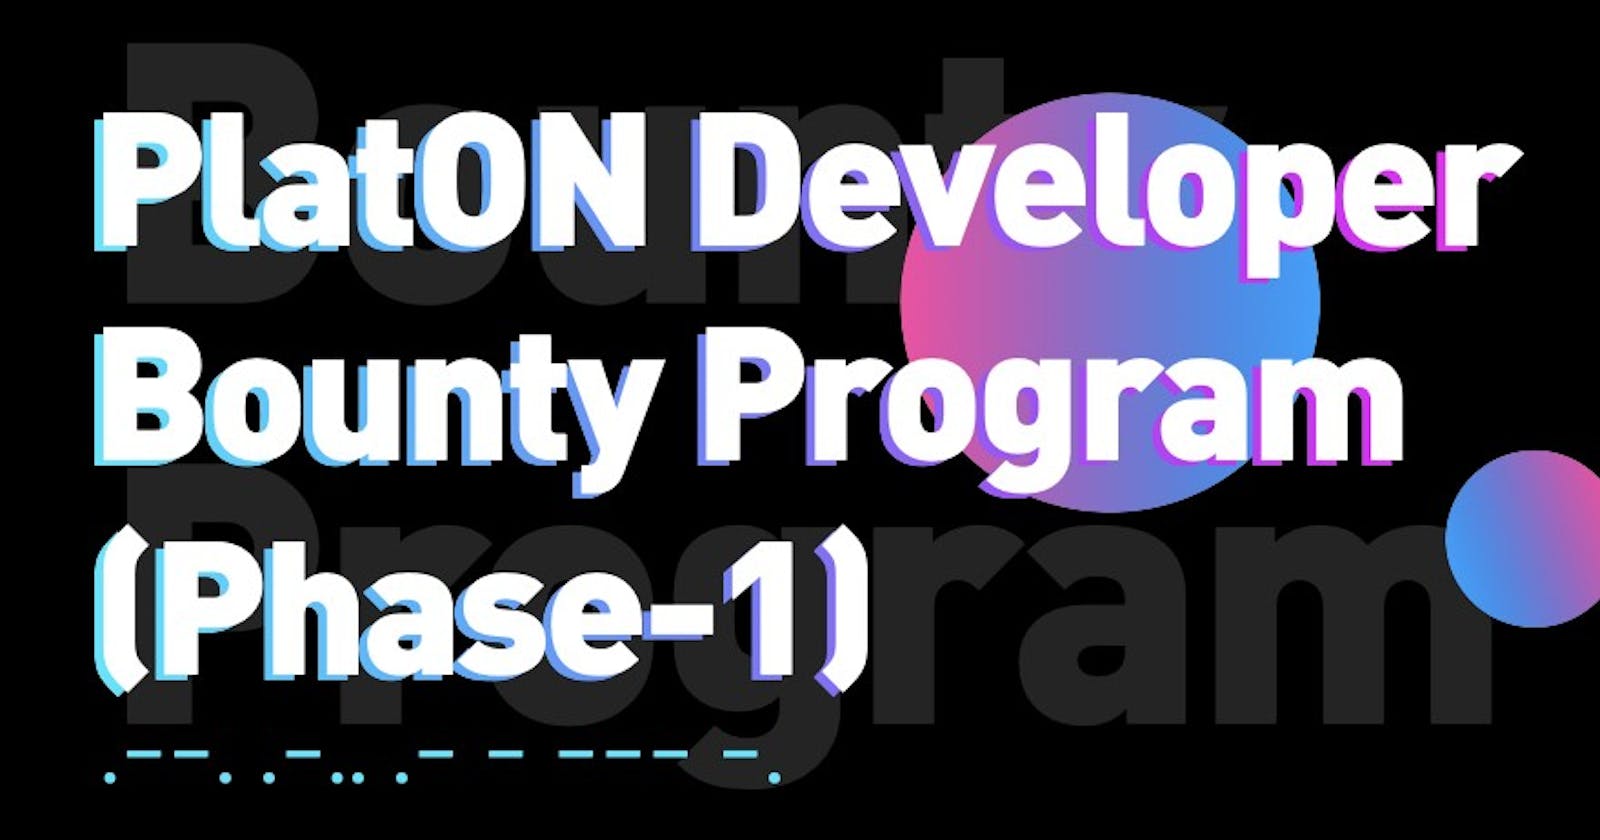 PlatON Developer Bounty Program